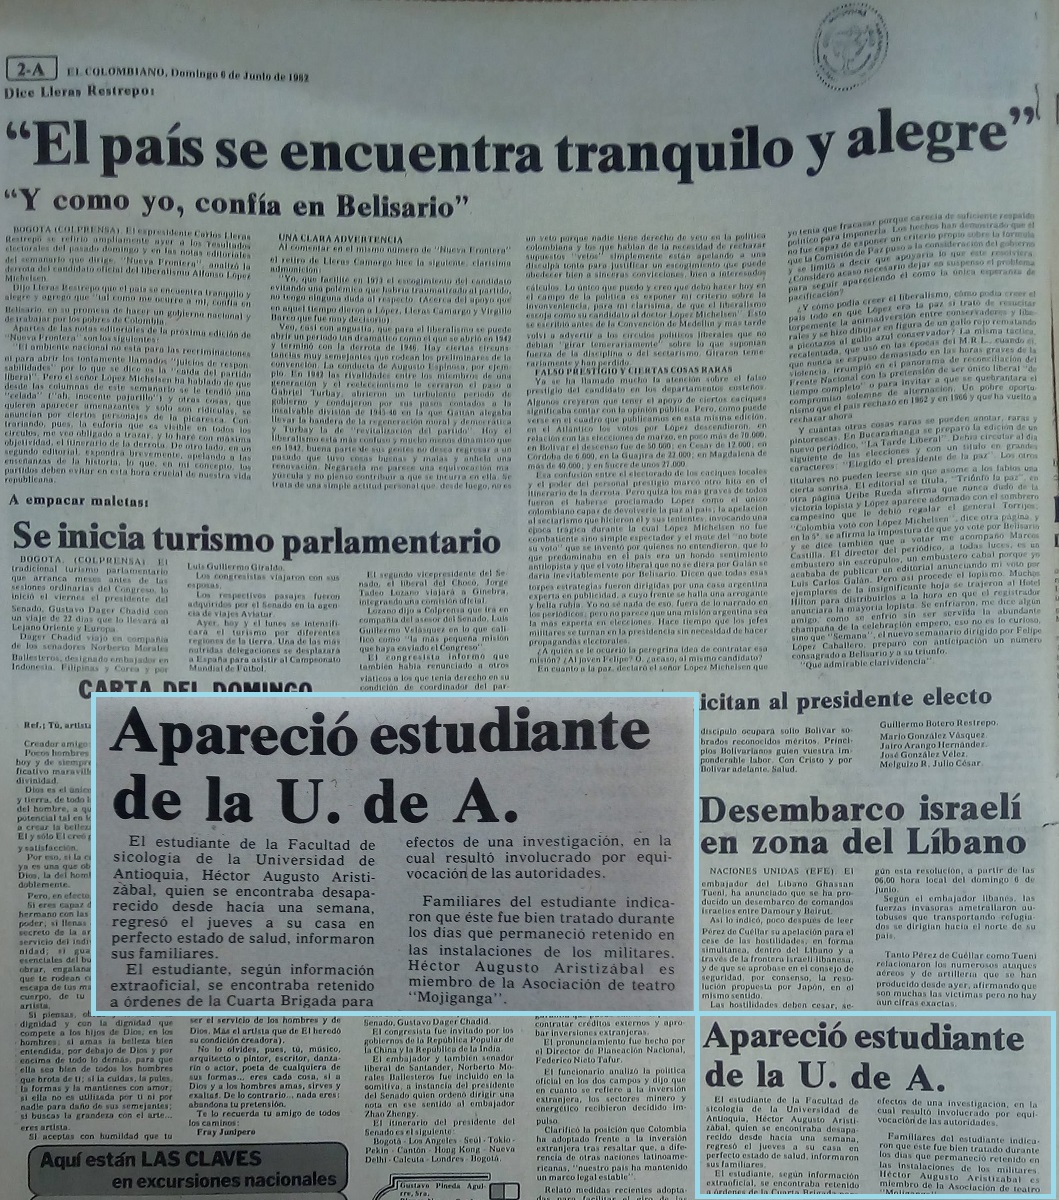 Fotografías tomadas de la edición del 6 de junio de 1982 del periódico El Colombiano